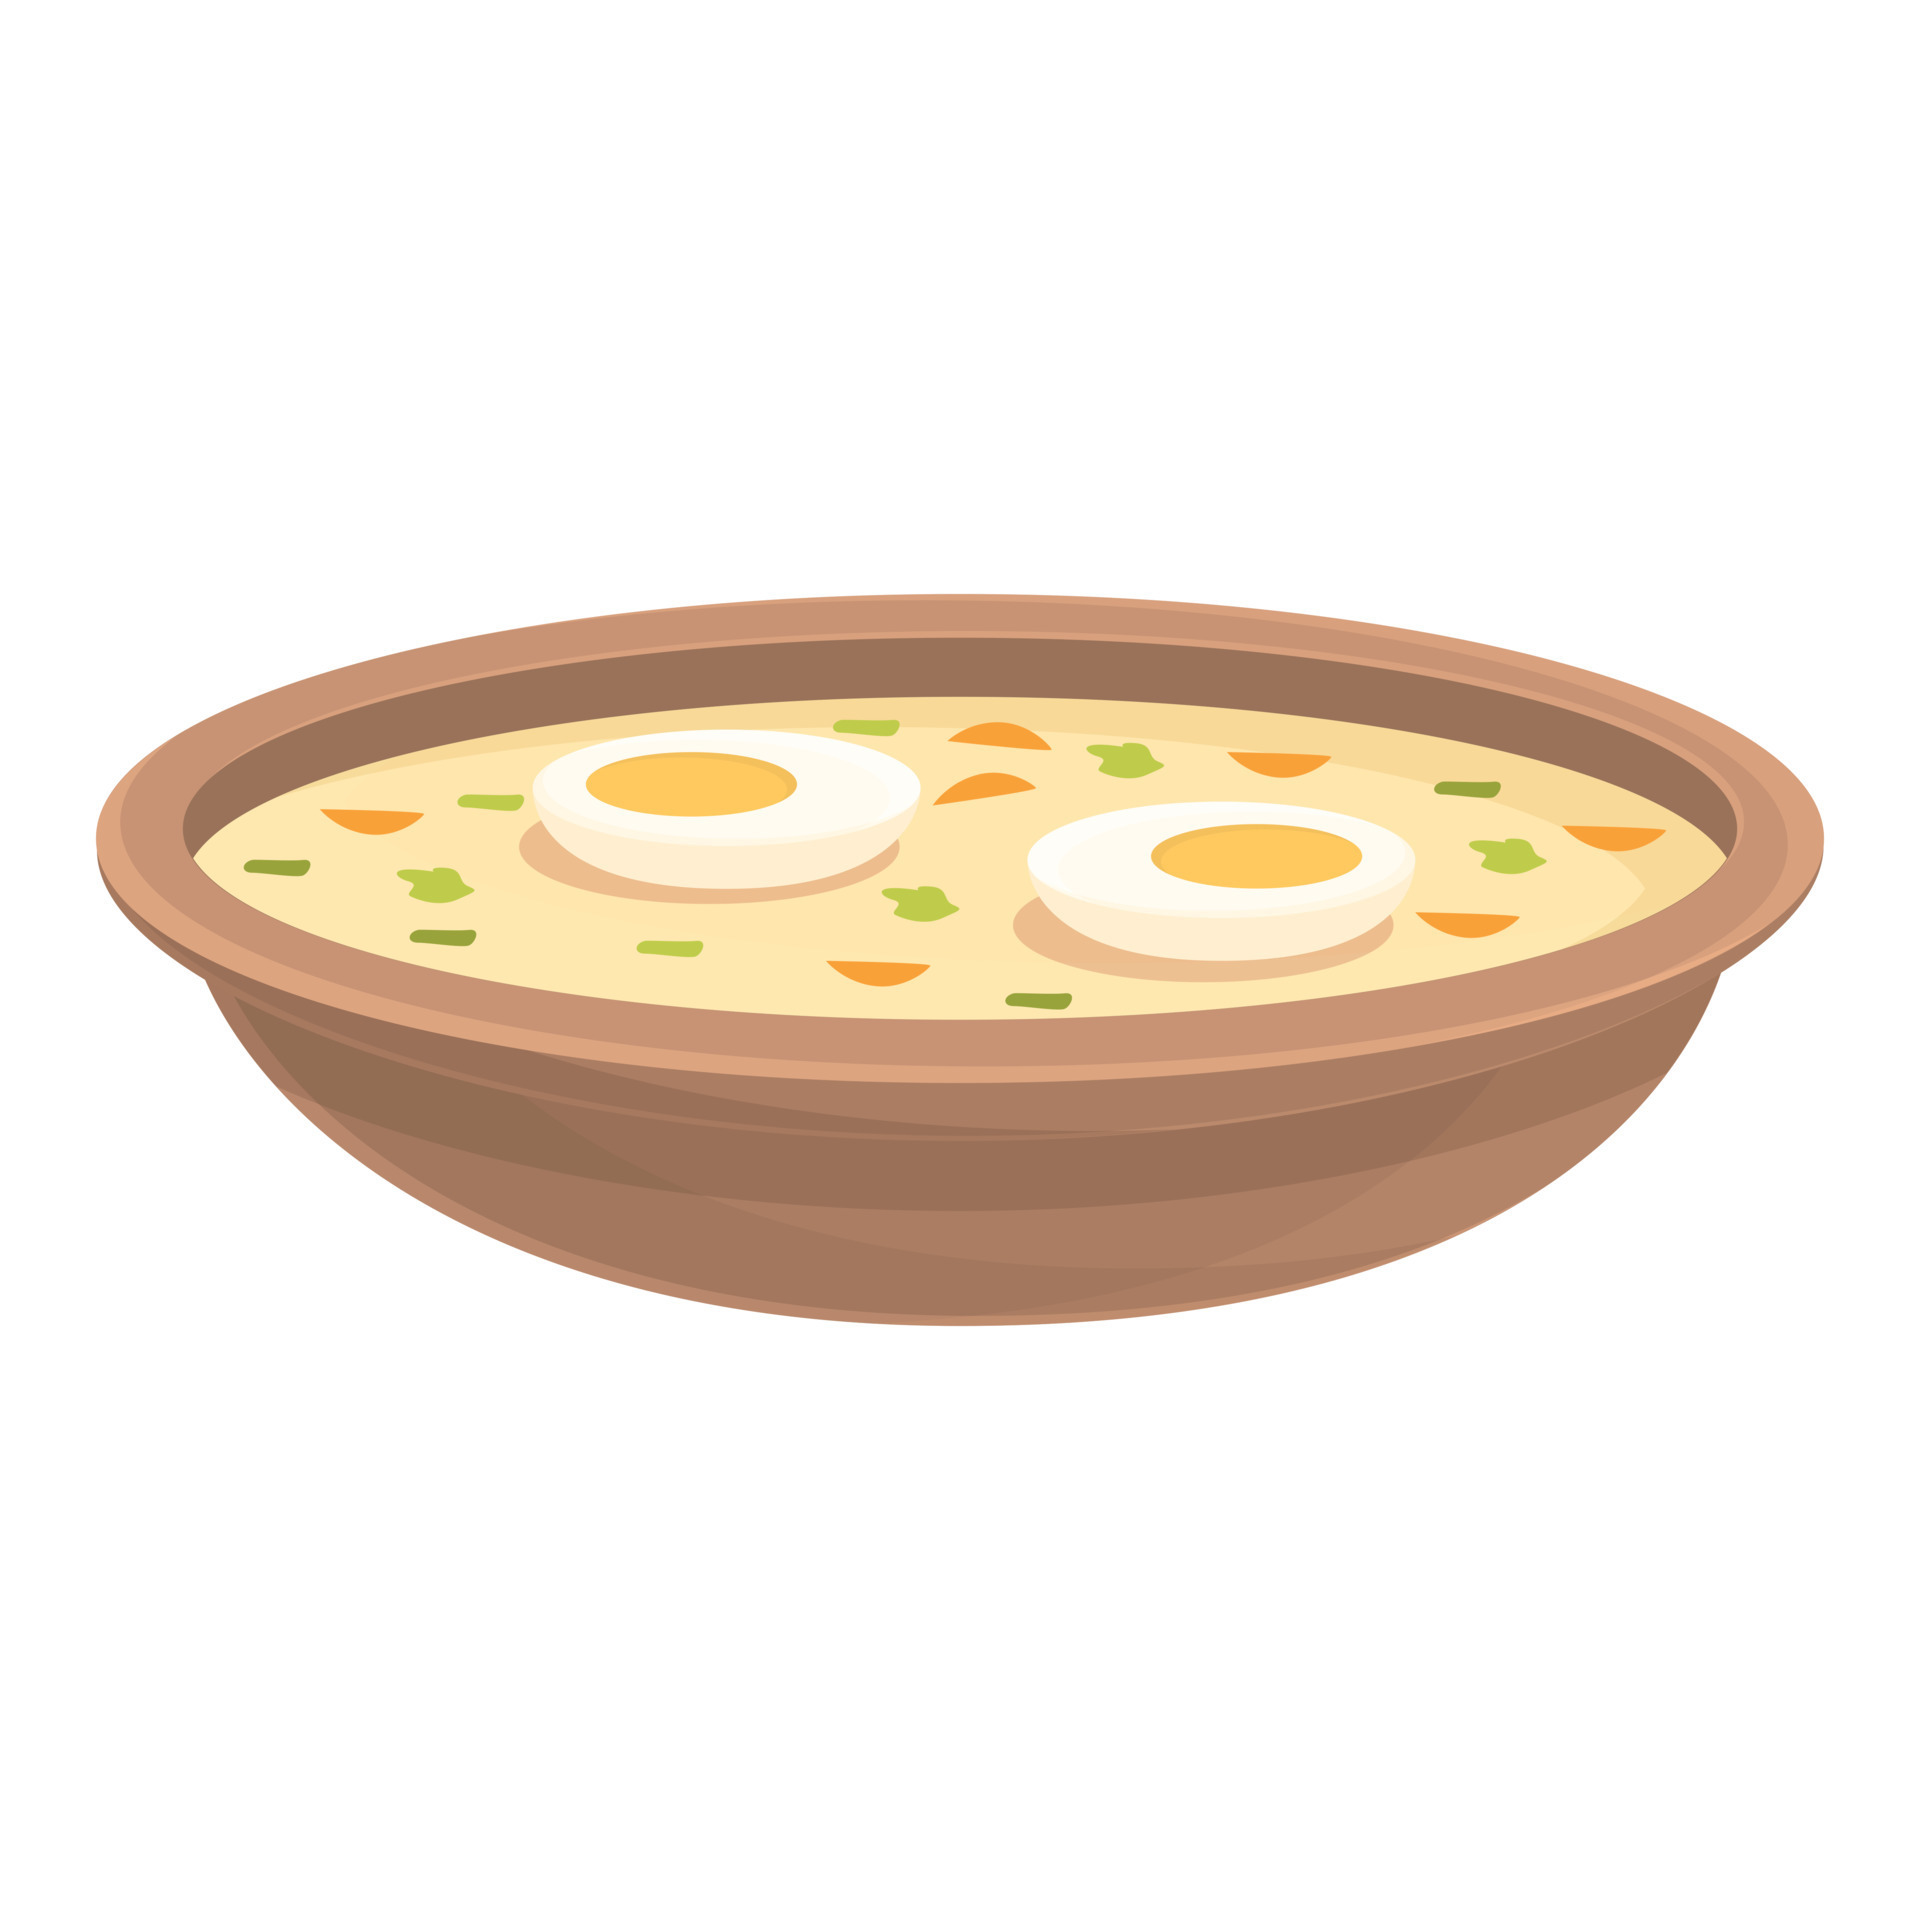 Egg soup icon cartoon vector. Polish food 14824864 Vector Art at Vecteezy